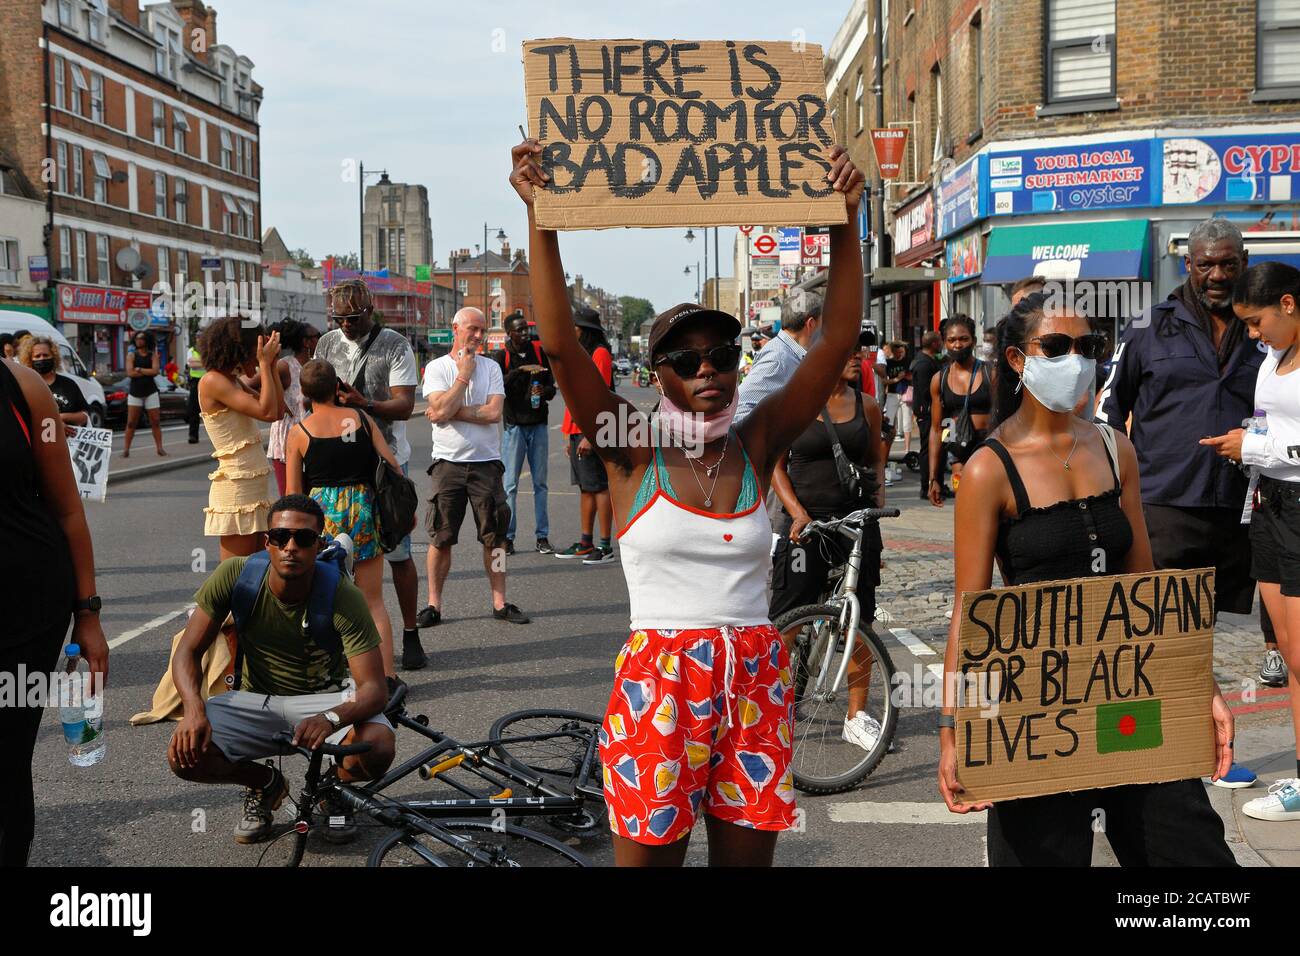 Tottenham - London (UK), 8. August 2020: Eine Koalition von Aktivistengruppen Kundgebung vor der Tottenham Polizeistation Polizei Rassismus und Gewalt. Stockfoto